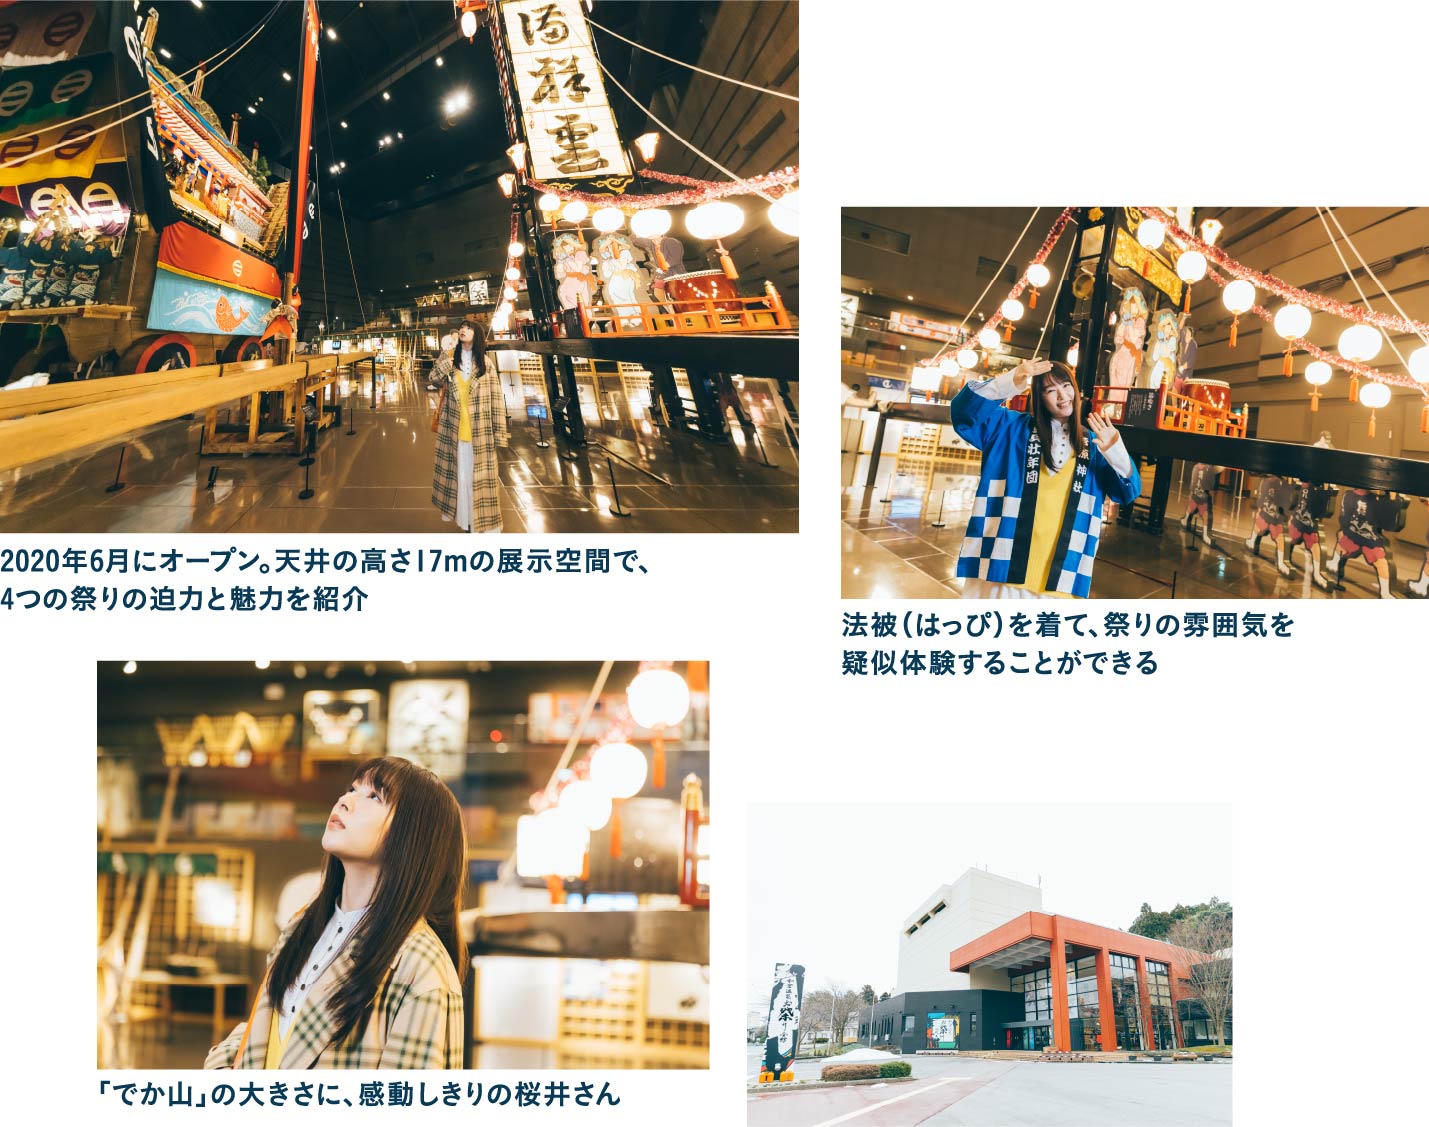 歴史や文化を展示する和倉温泉お祭り会館で七尾伝統の祭りを体感